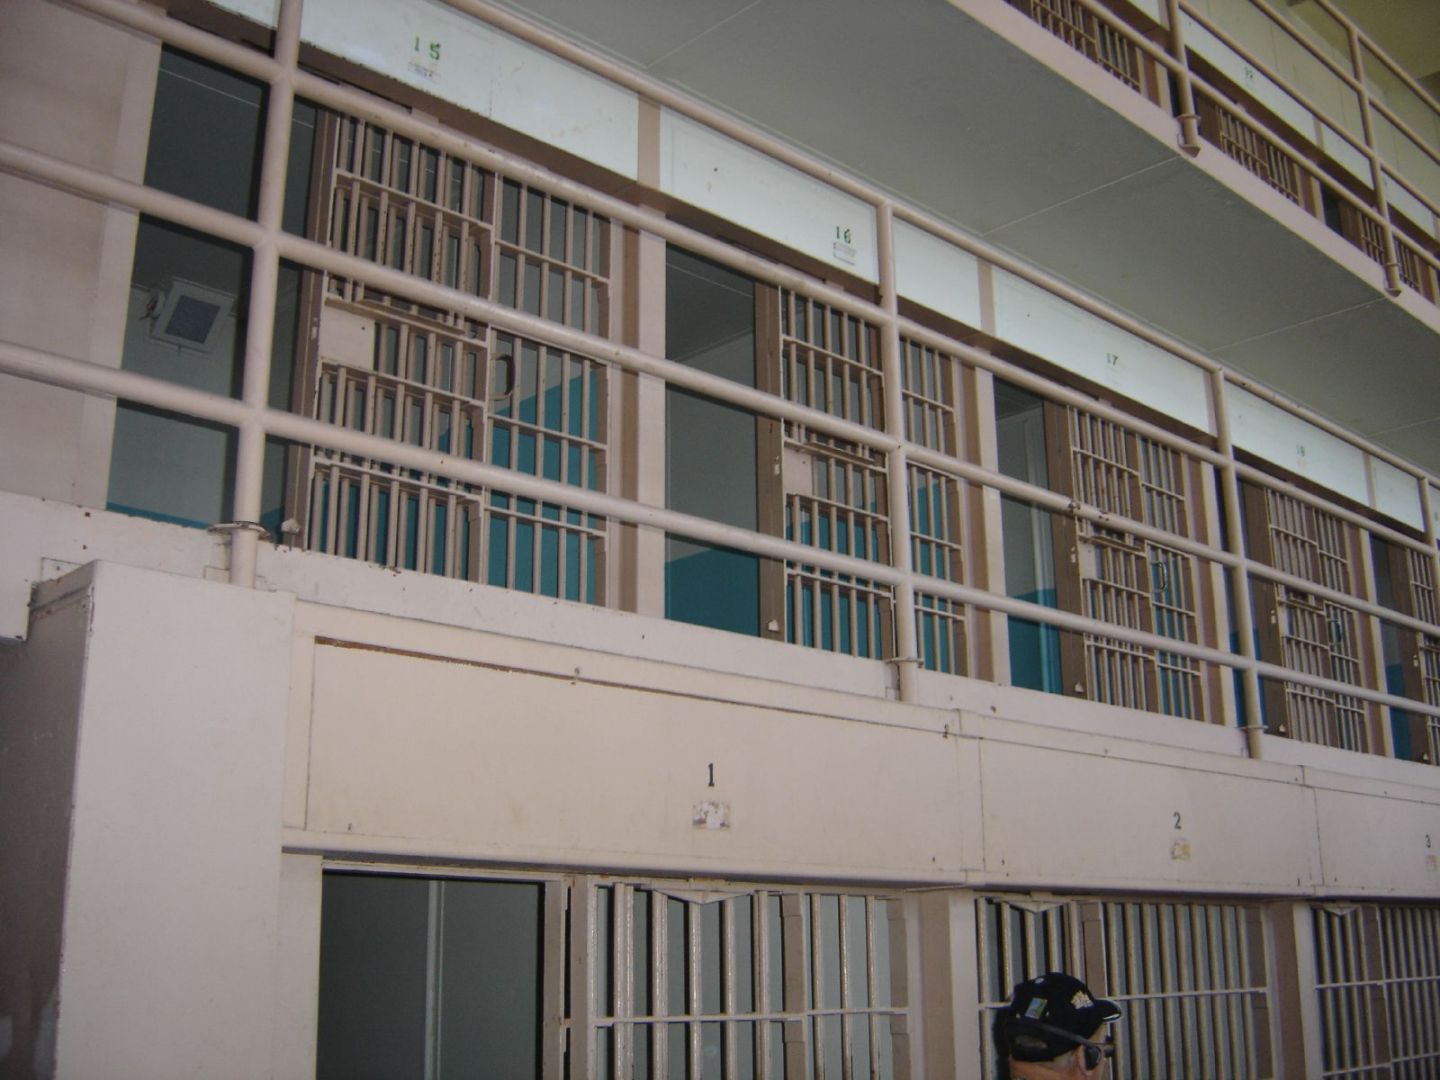 Some_More_Prison_Cells